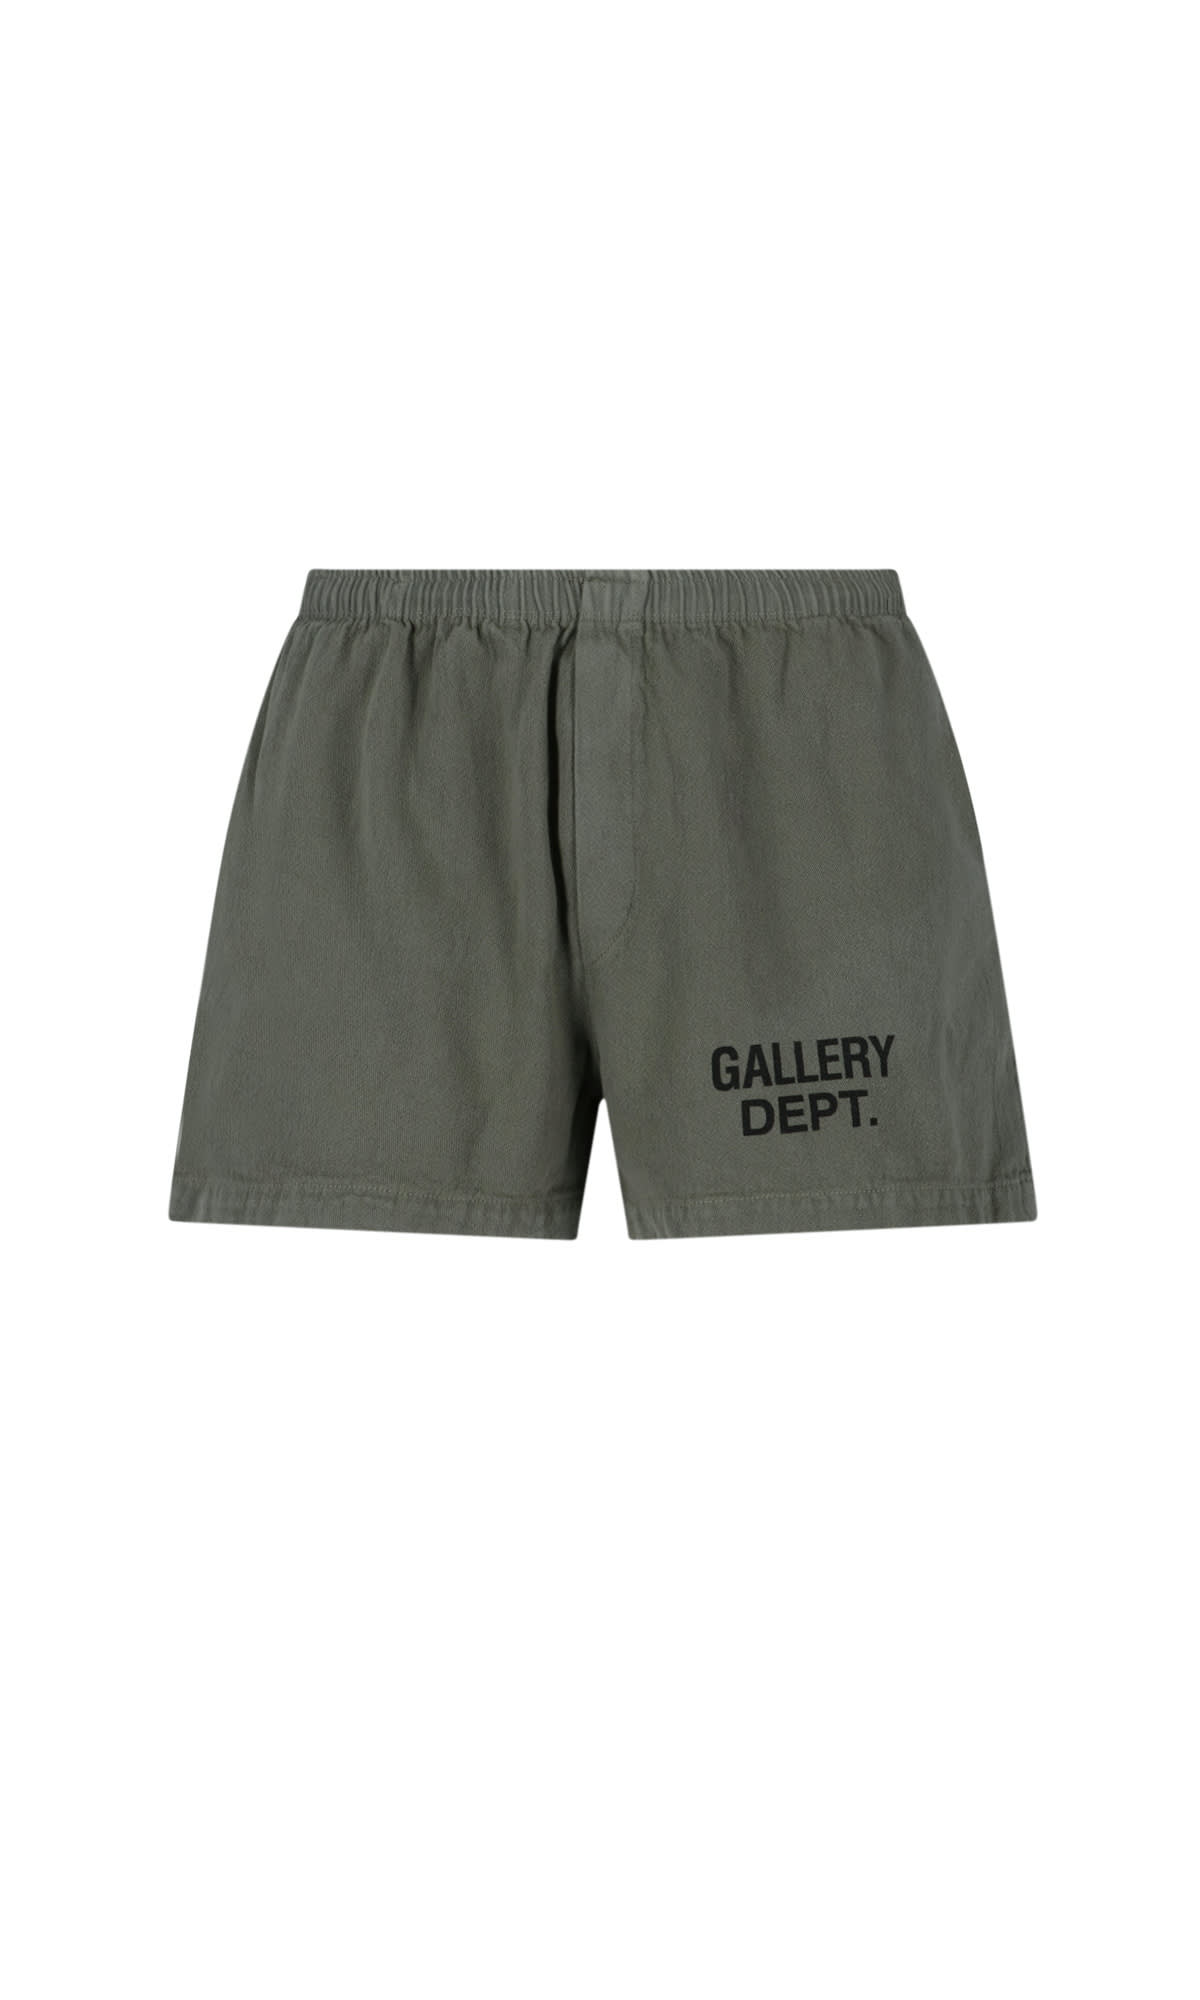 GALLERY DEPT. PANTS